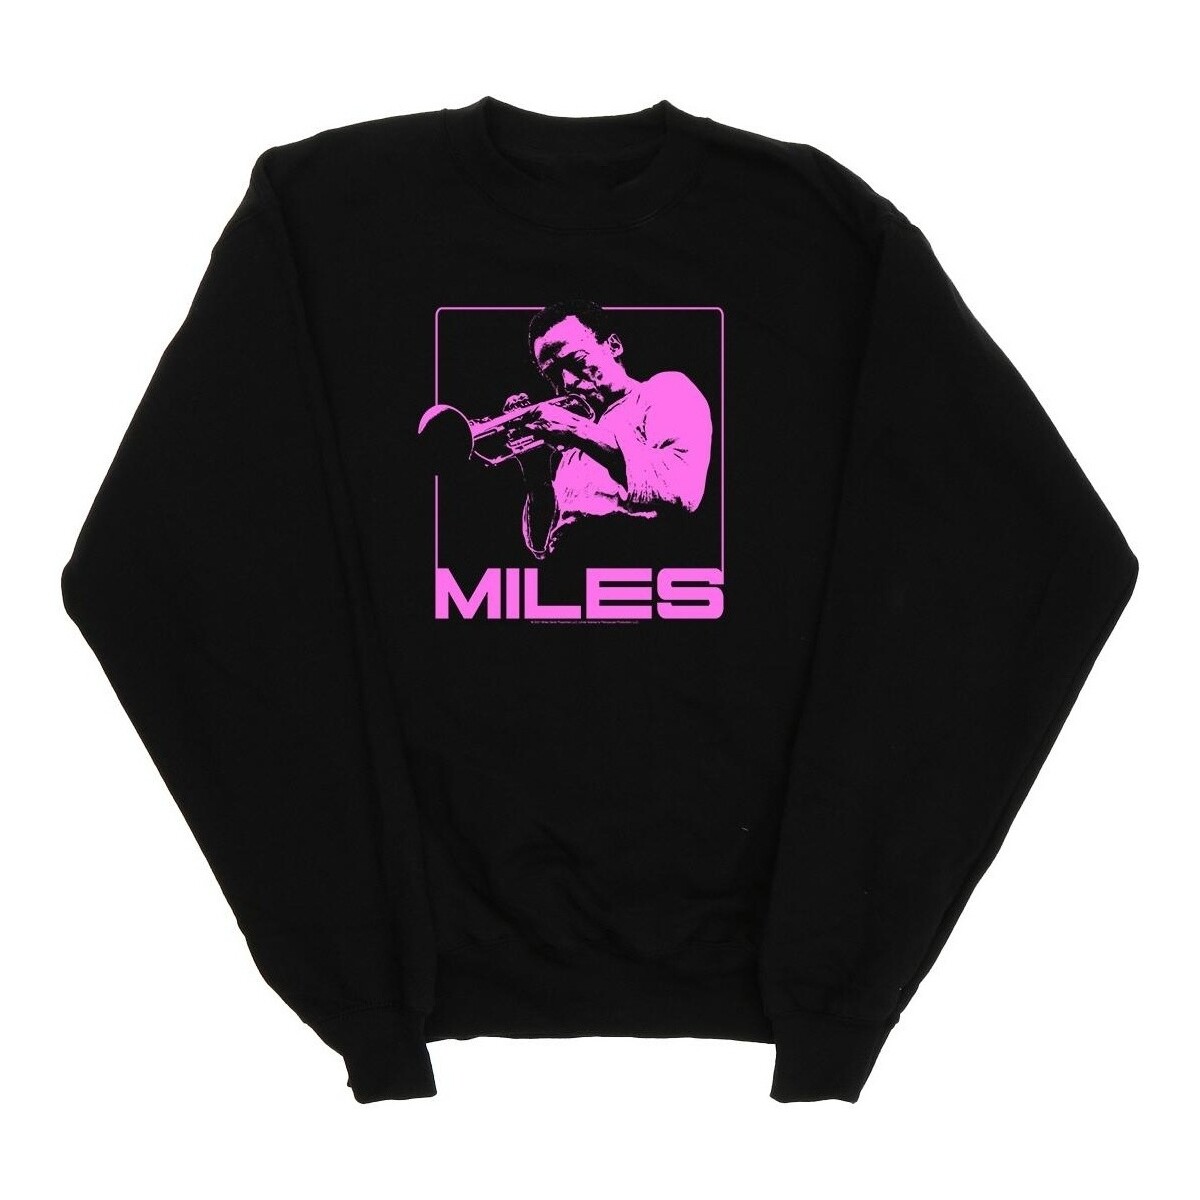 Vêtements Fille Sweats Miles Davis  Noir